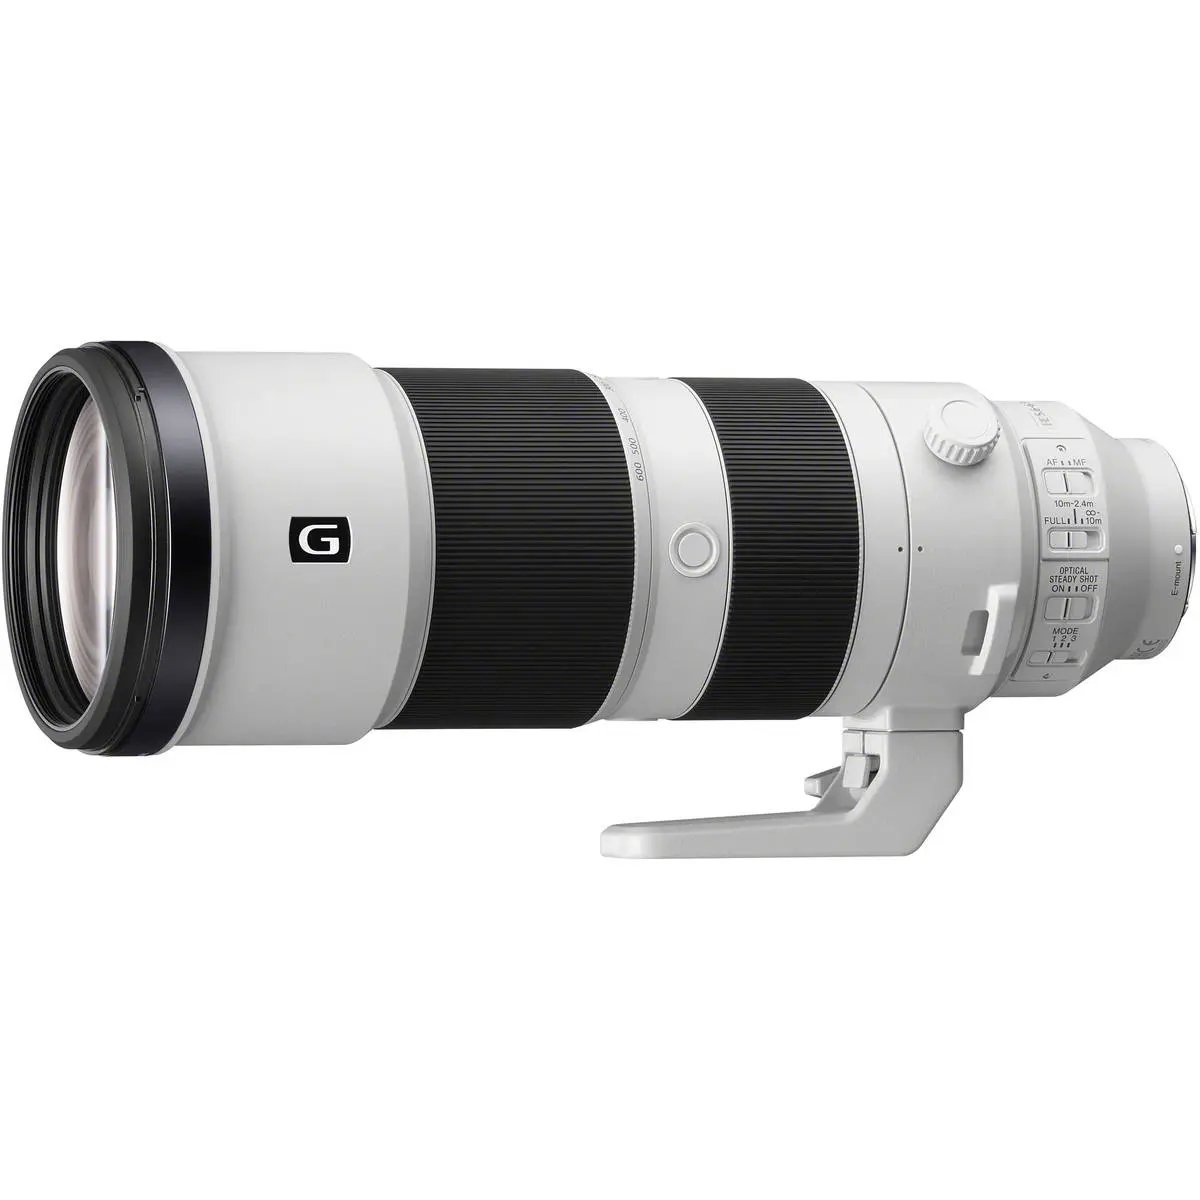 Main Image Sony FE 200-600mm f/5.6-6.3 G OSS Telephoto Lens E-Mount